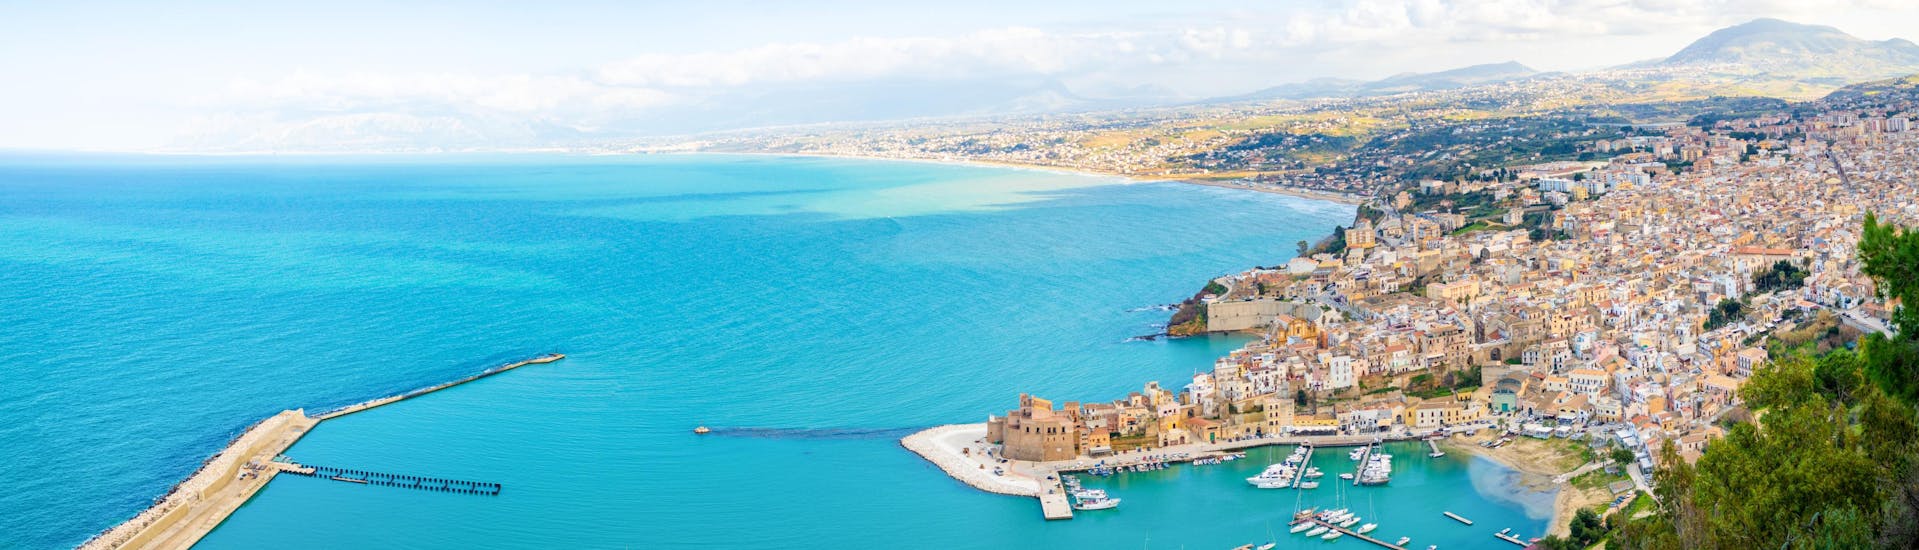 Vista aérea de Castellammare del Golfo, un popular punto de partida para los paseos en barco en Sicilia.